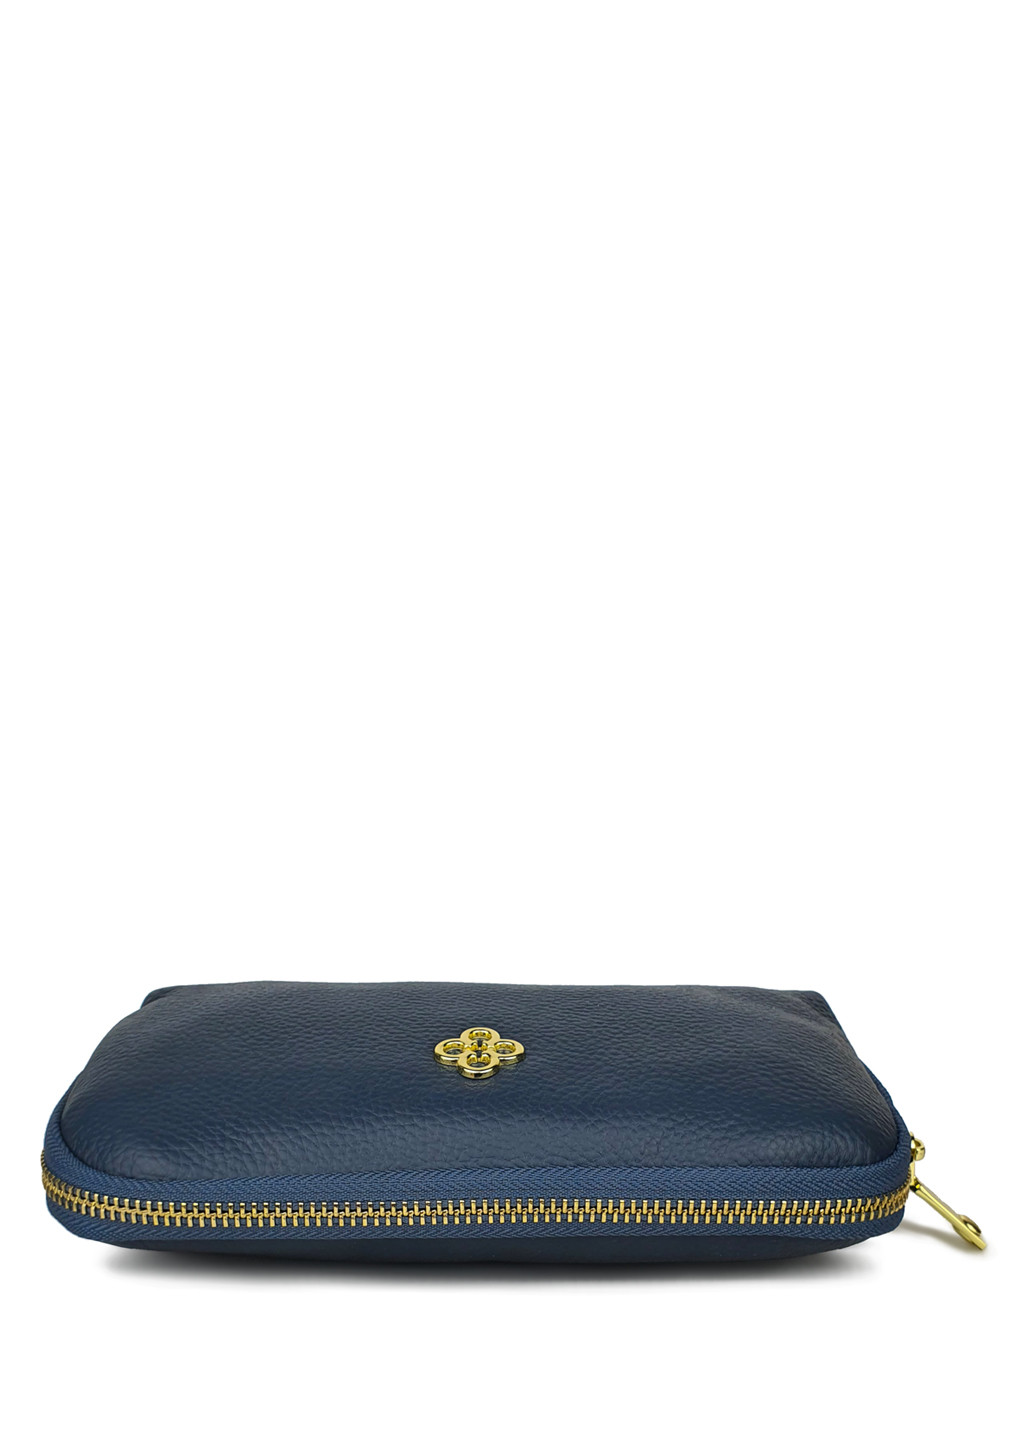 Жіночий гаманець портмоне великий синій шкіряний 21*11*5 Fashion (252033299)